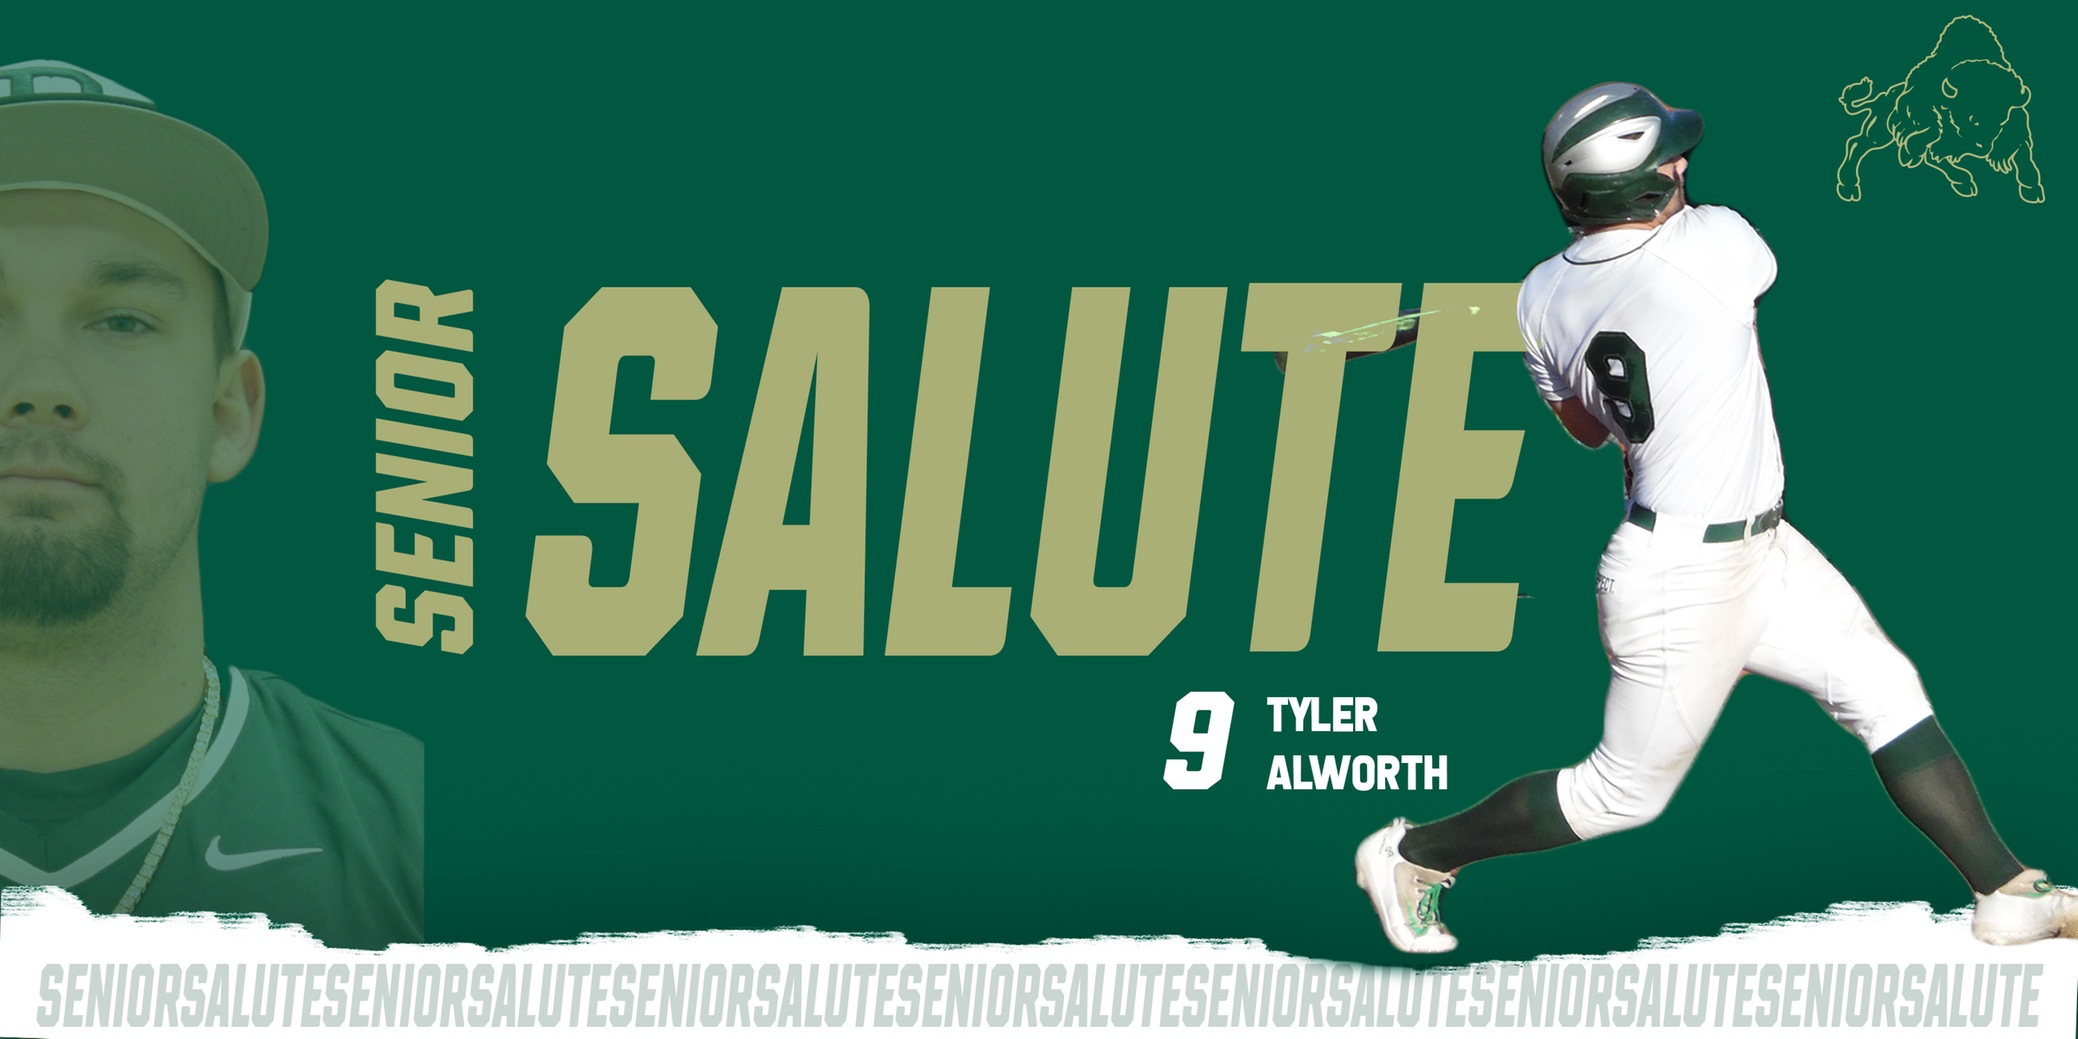 Senior Saturday Salute: Tyler Alworth